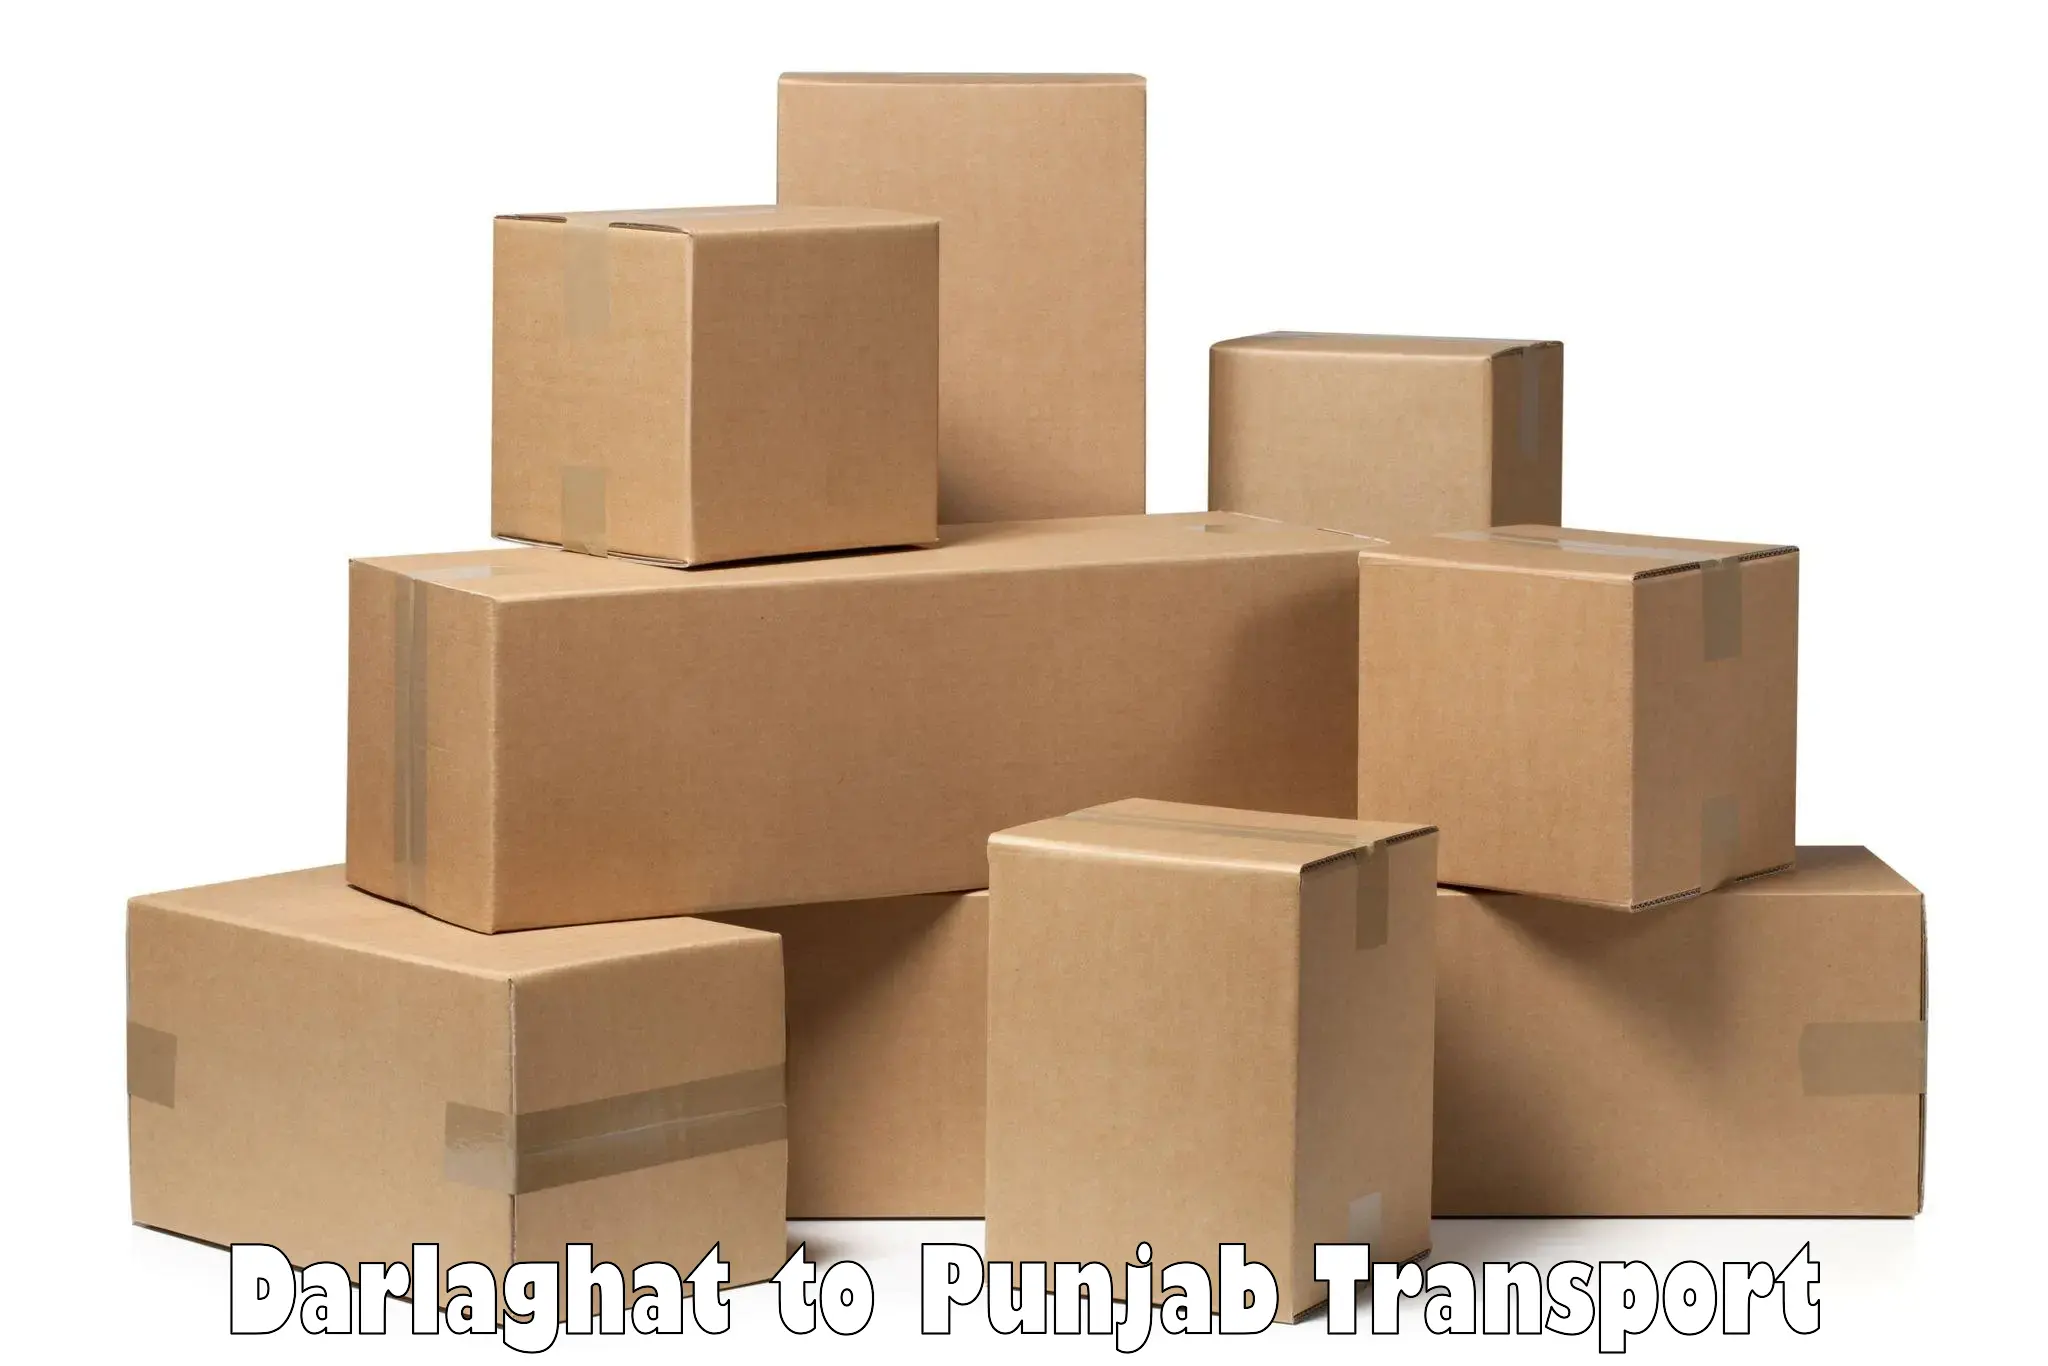 Furniture transport service Darlaghat to Adampur Jalandhar